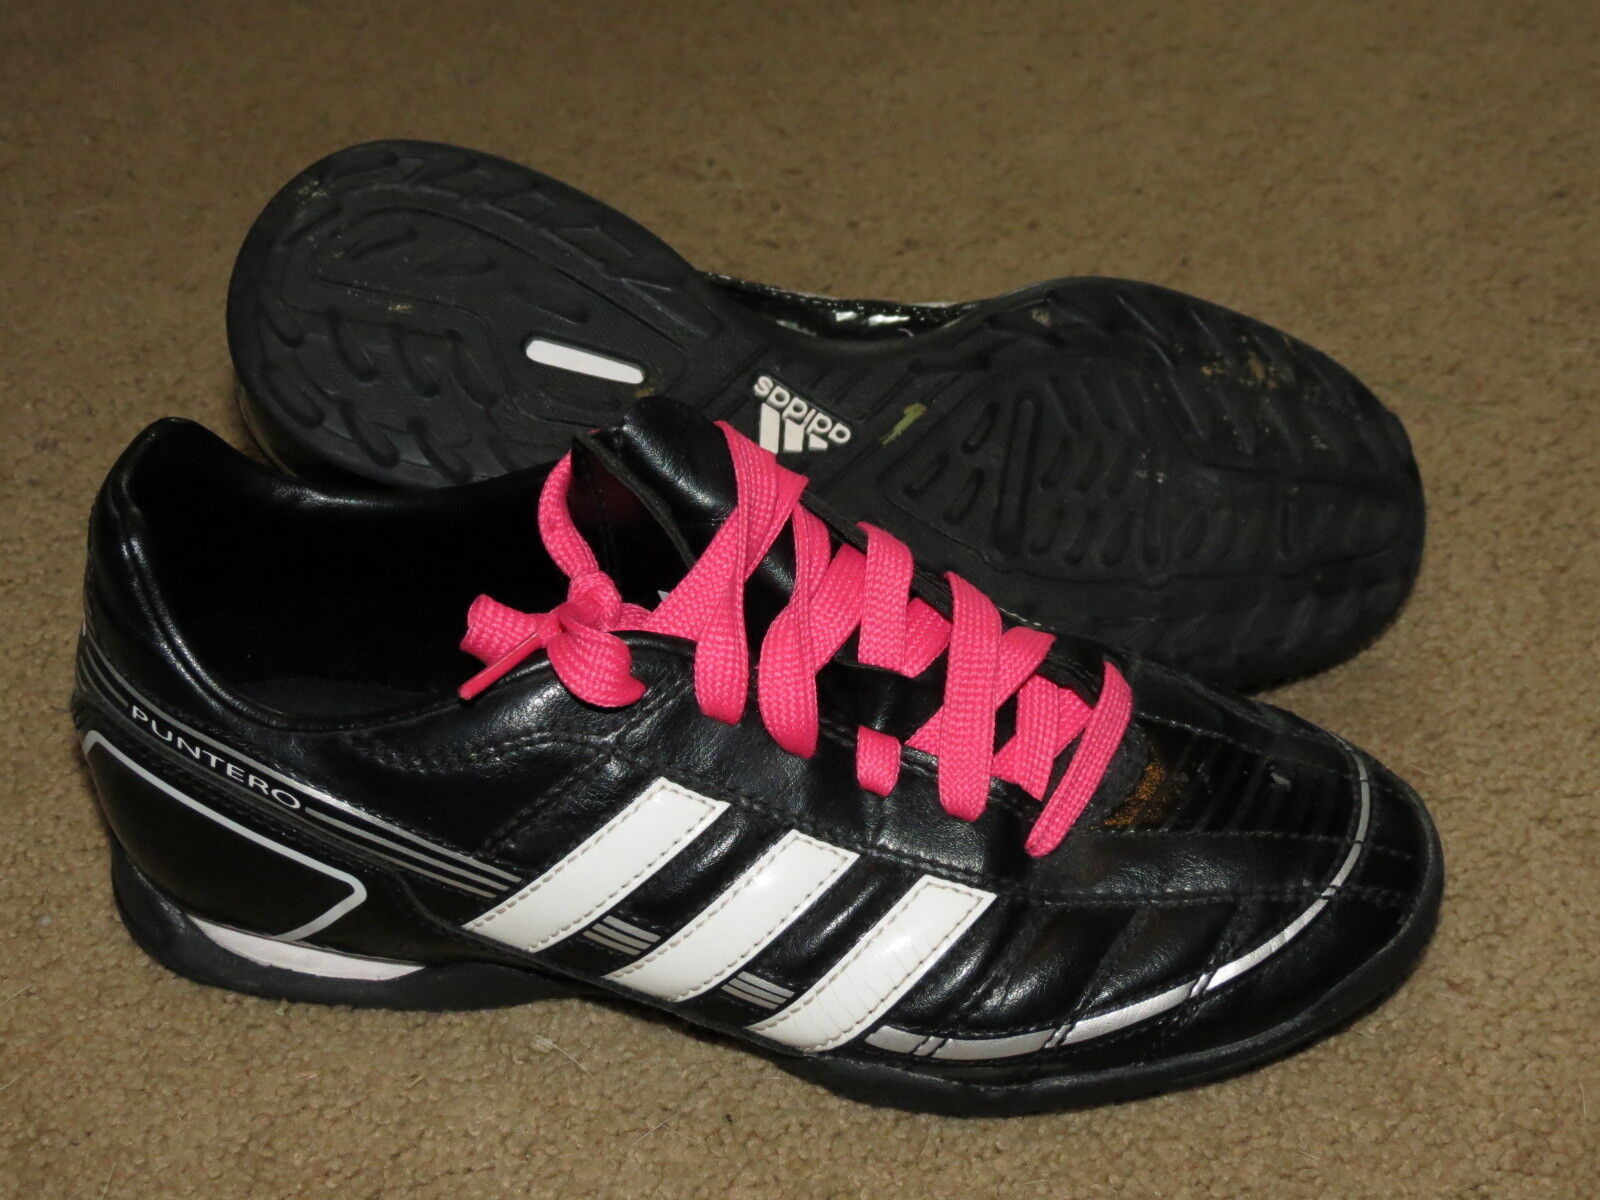 Aliado pedir disculpas lección GREAT Adidas Puntero turf soccer shoes / cleats - youth / boys 5.5 | eBay